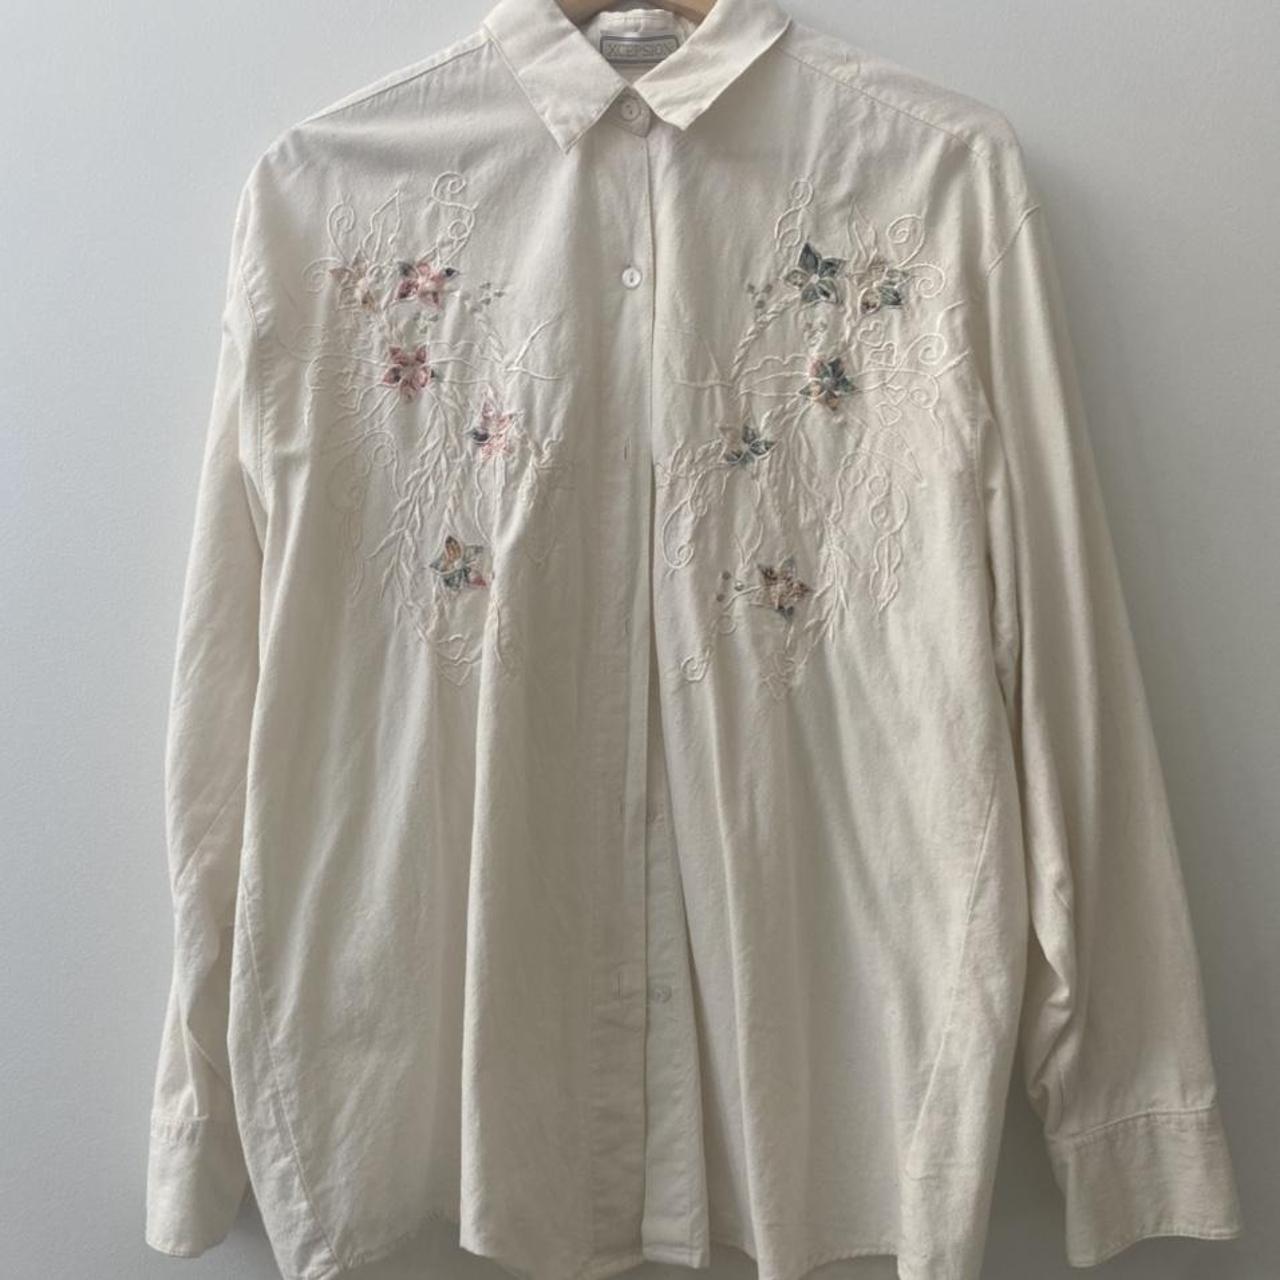 Vintage white floral shirt - size medium mens -... - Depop